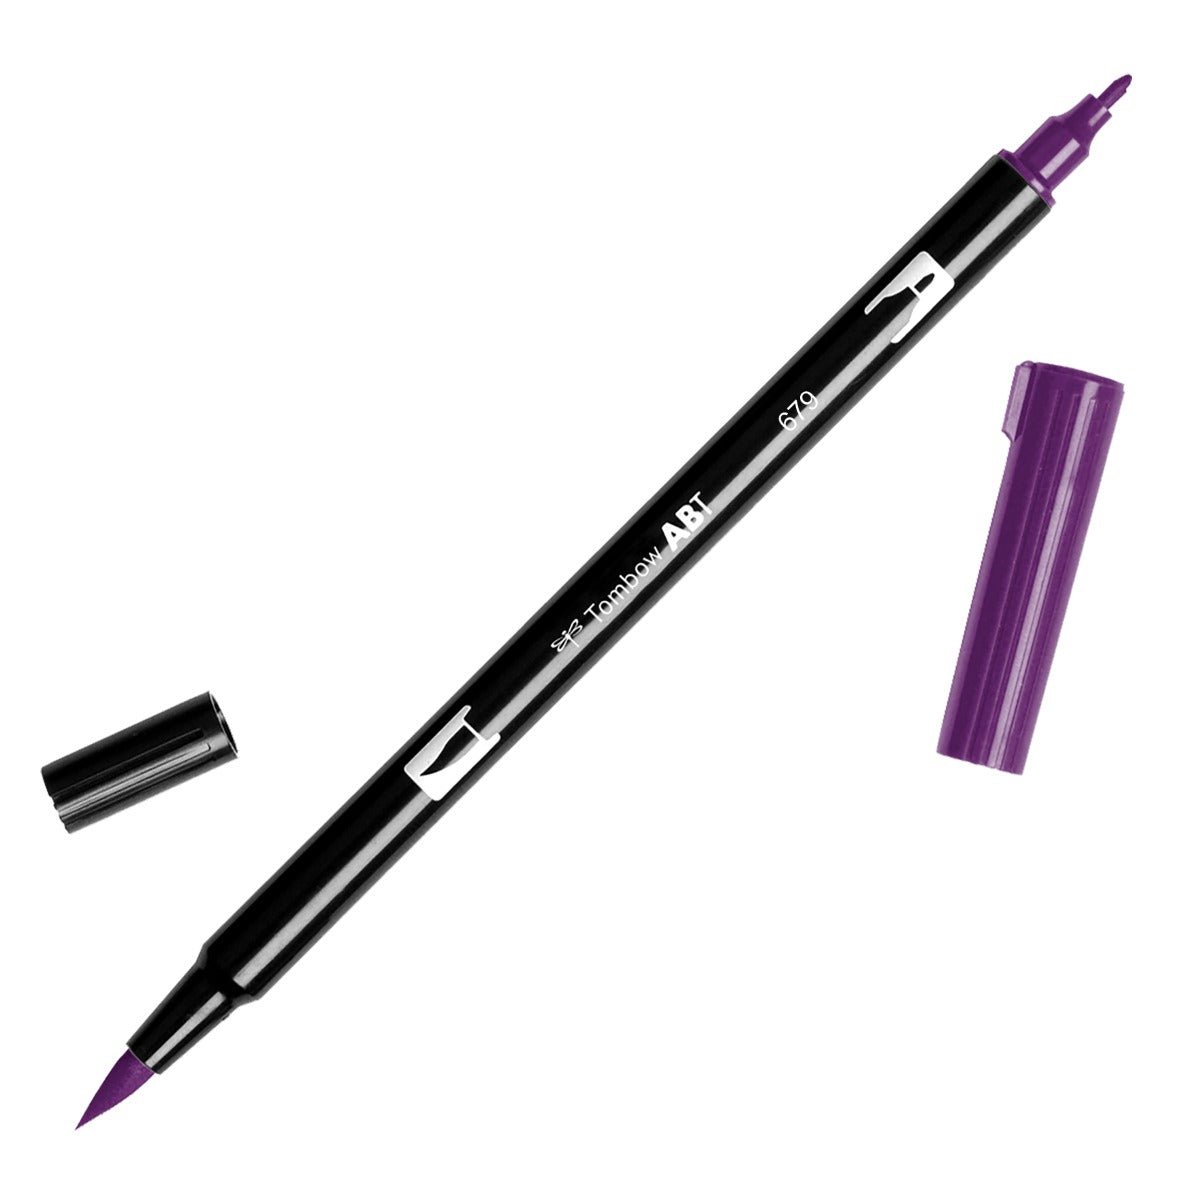 Tombow Dual Brush Pen 679 Dark Plum - theartshop.com.au